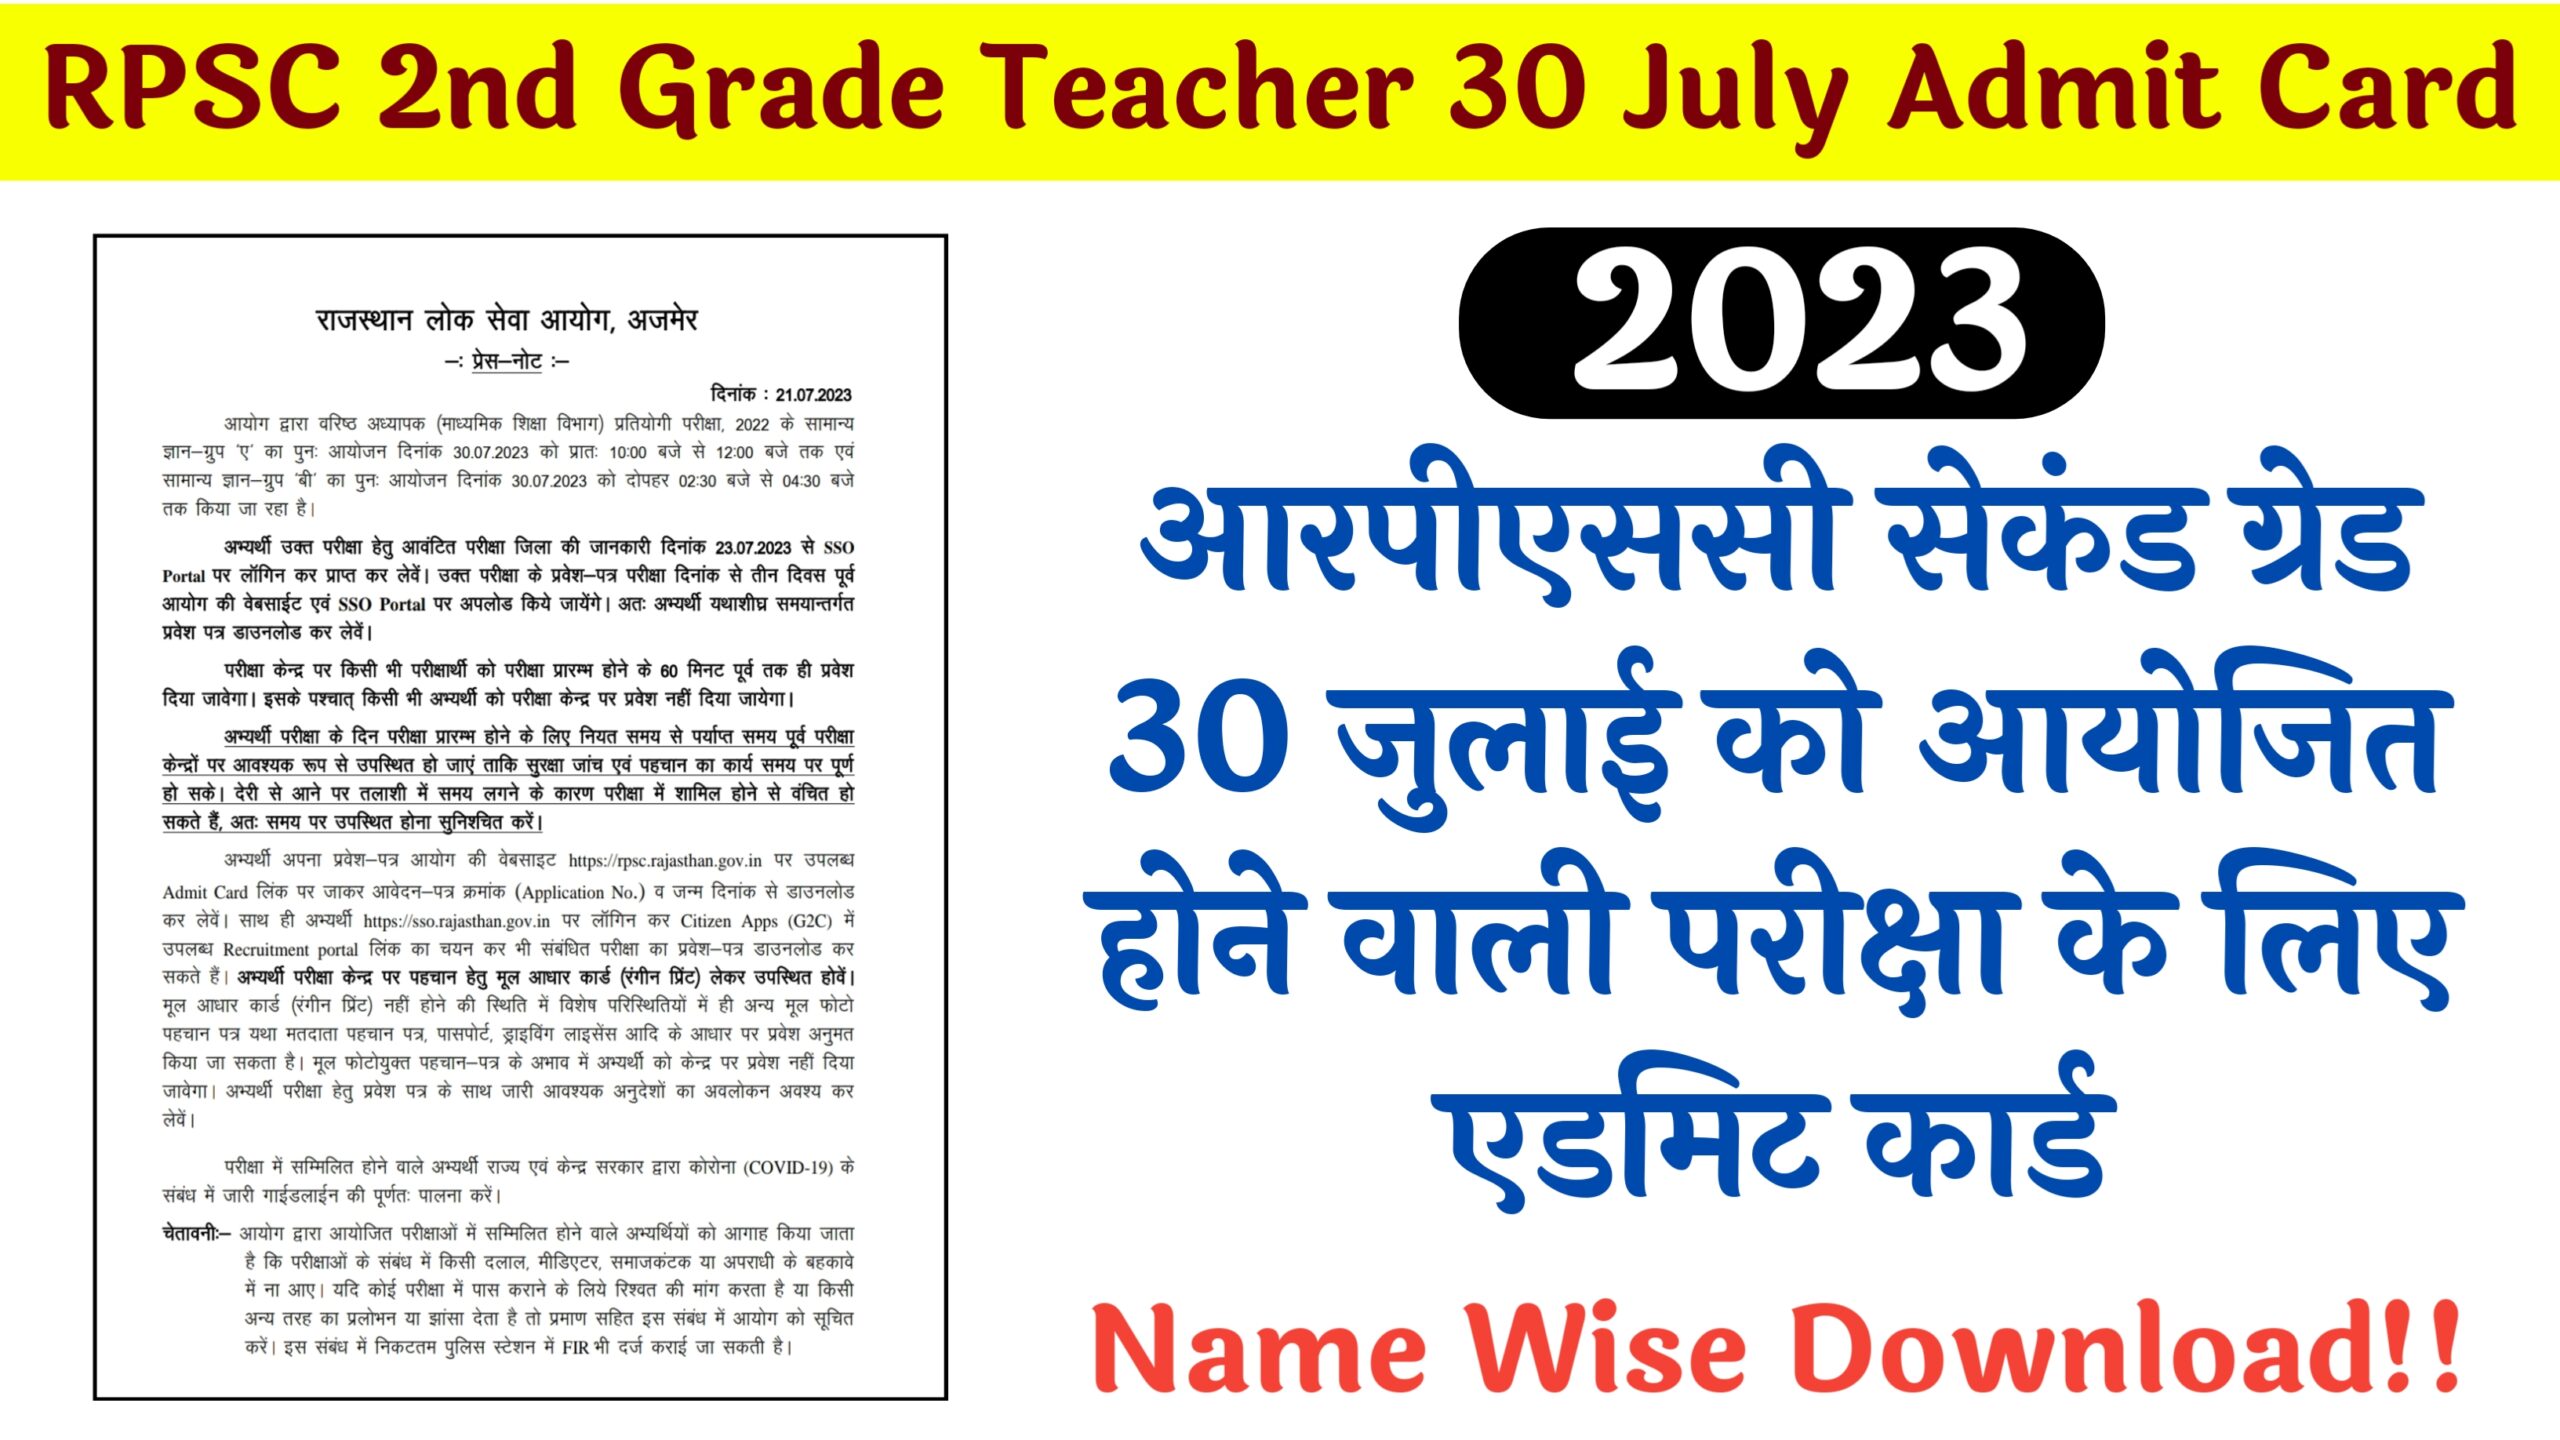 RPSC 2nd Grade Teacher 30 July Admit Card 2023